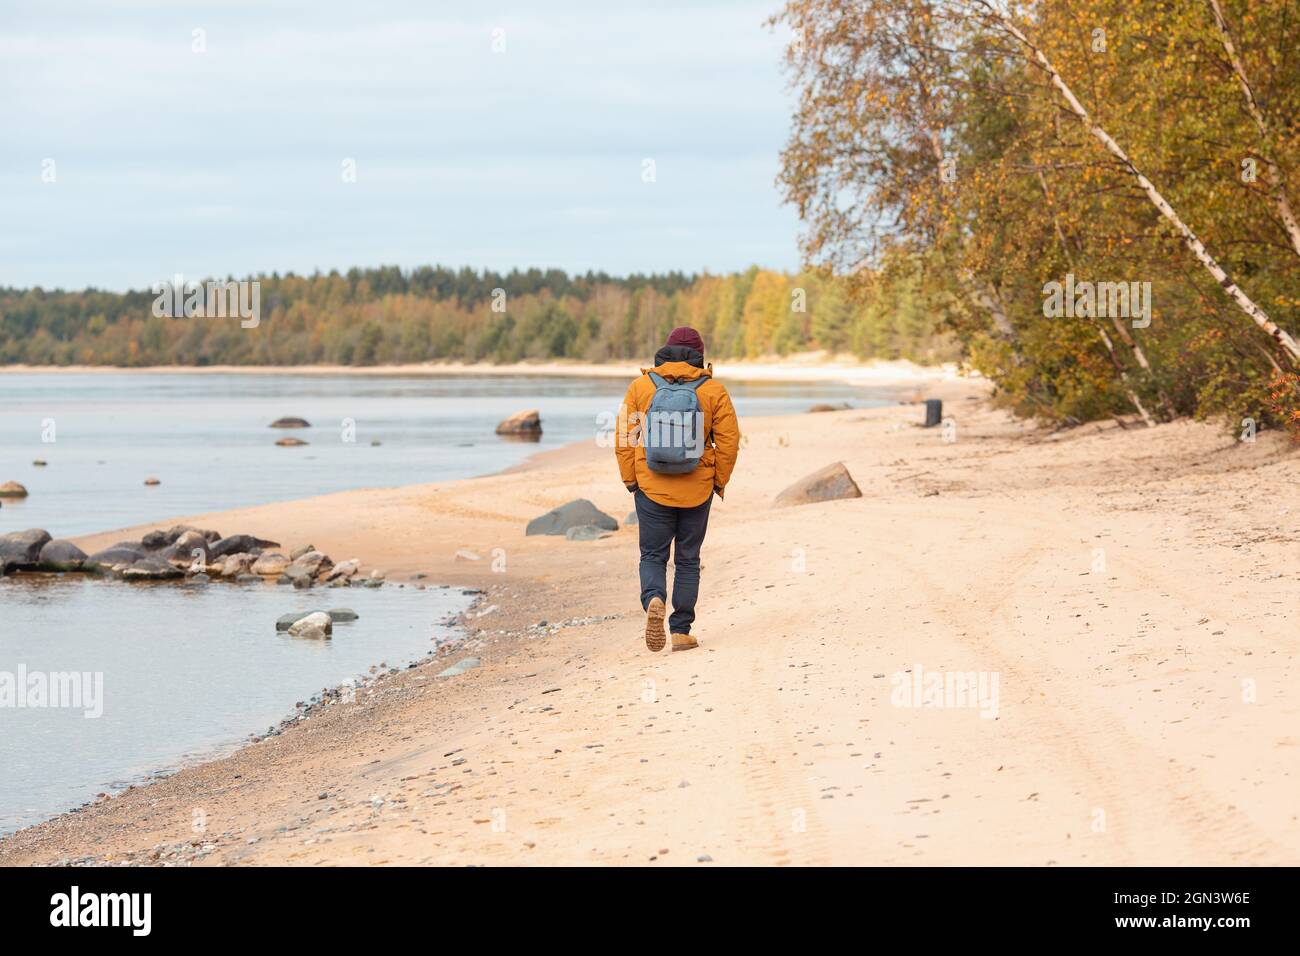 Vue arrière de l'homme en veste jaune marchant le long du lac - image Banque D'Images